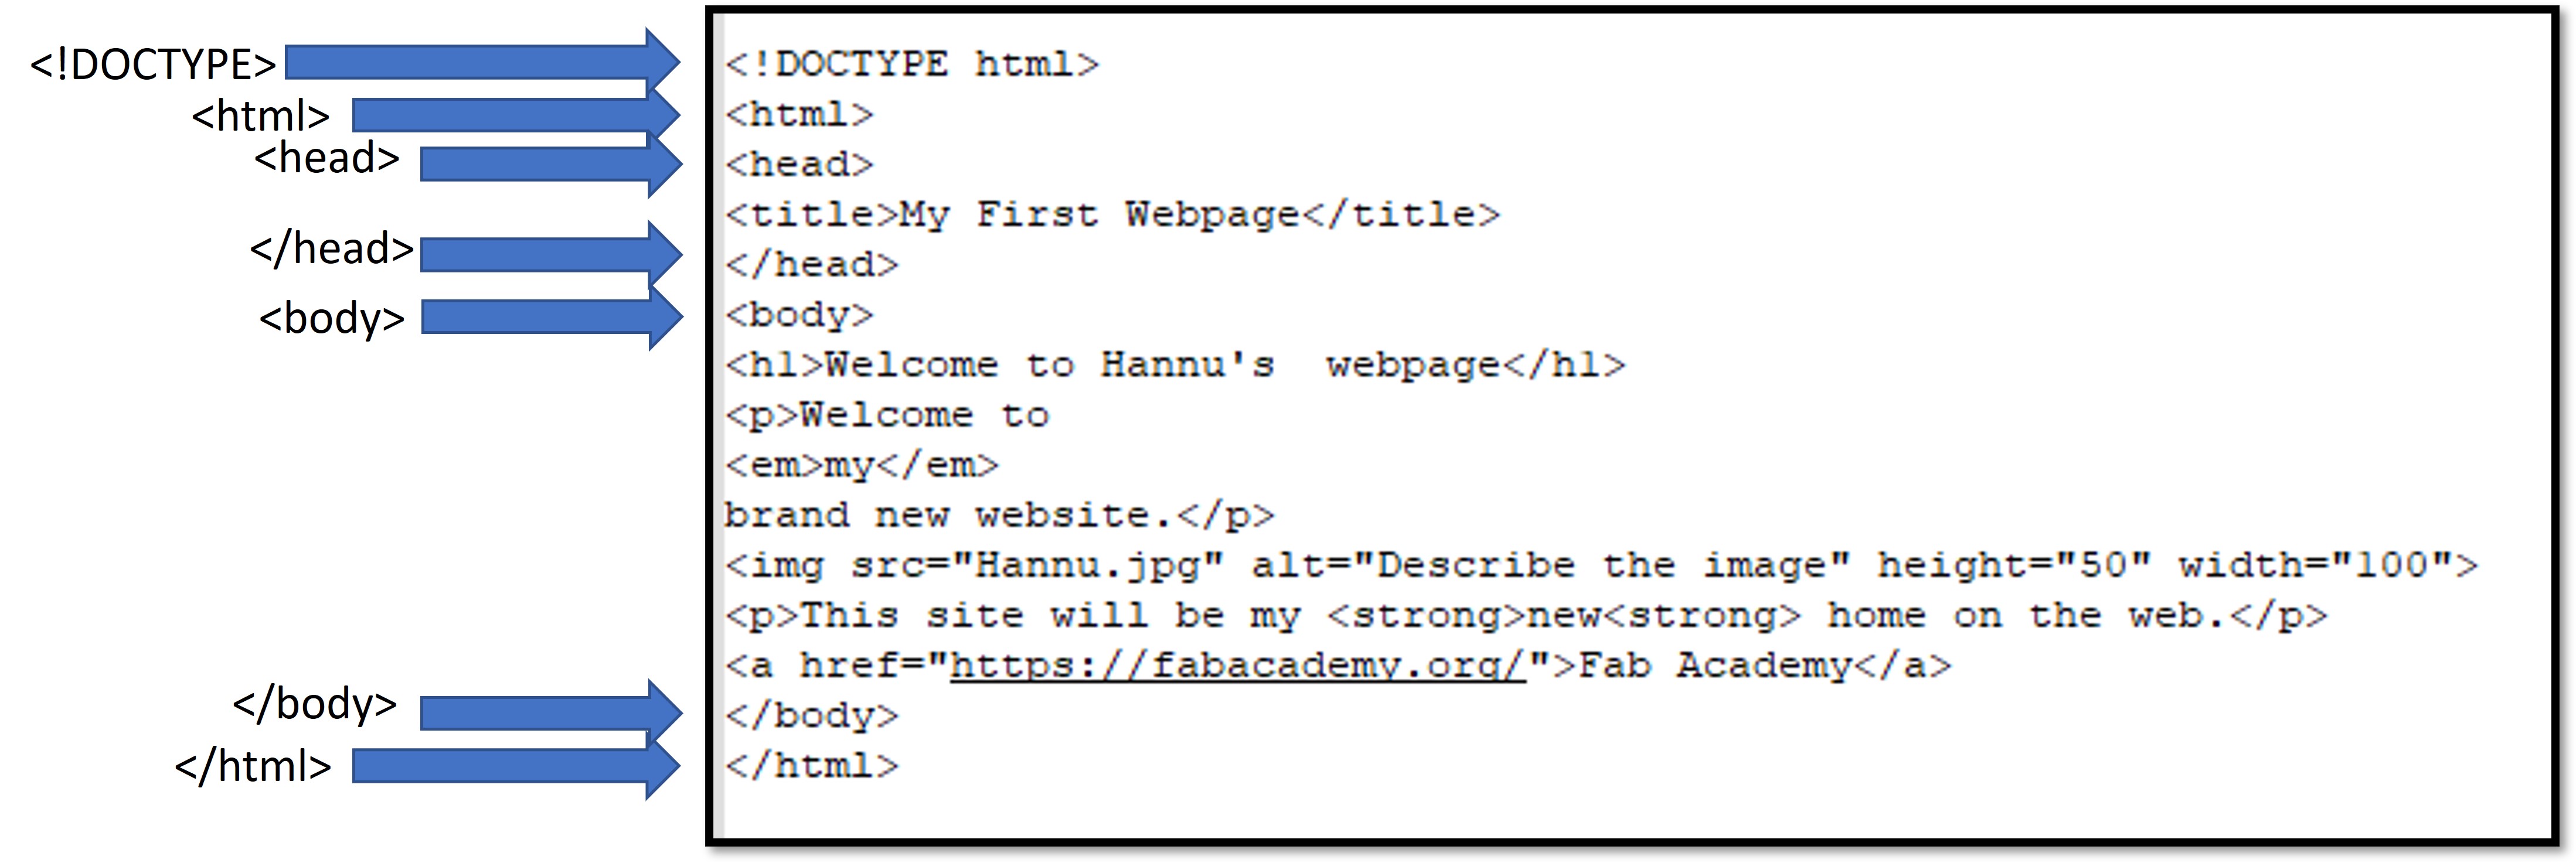 HTMLsite01